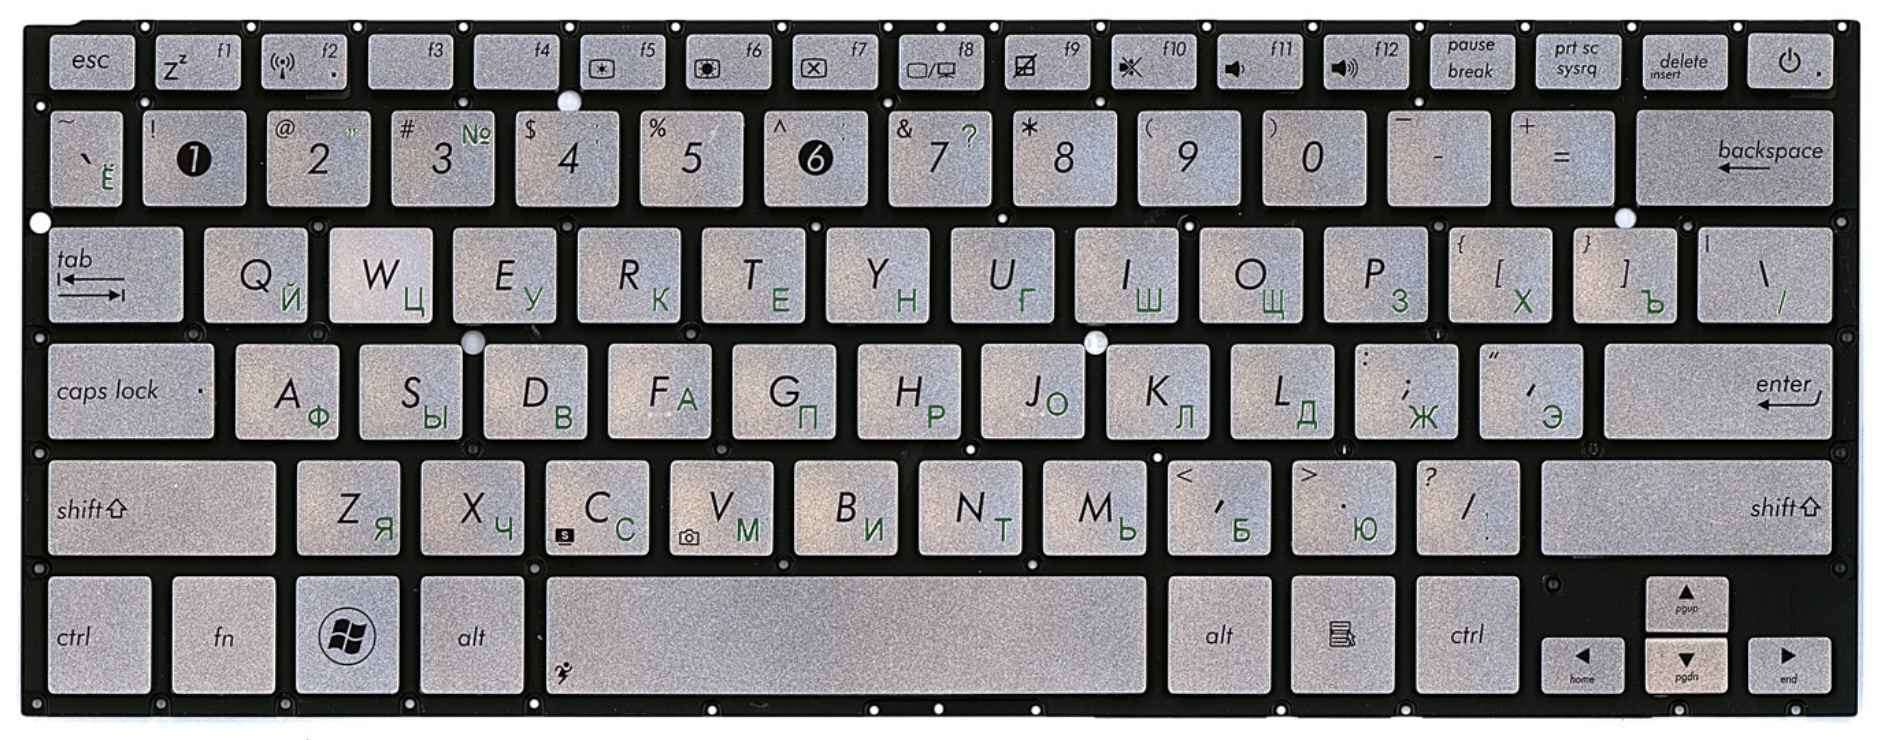 Как располагать клавиатуру. ASUS ZENBOOK ux32a клавиатура. ASUS ZENBOOK ux32vd клавиатура. Раскладка клавиатуры компьютера асус. Расположение клавиш на клавиатуре ноутбука.